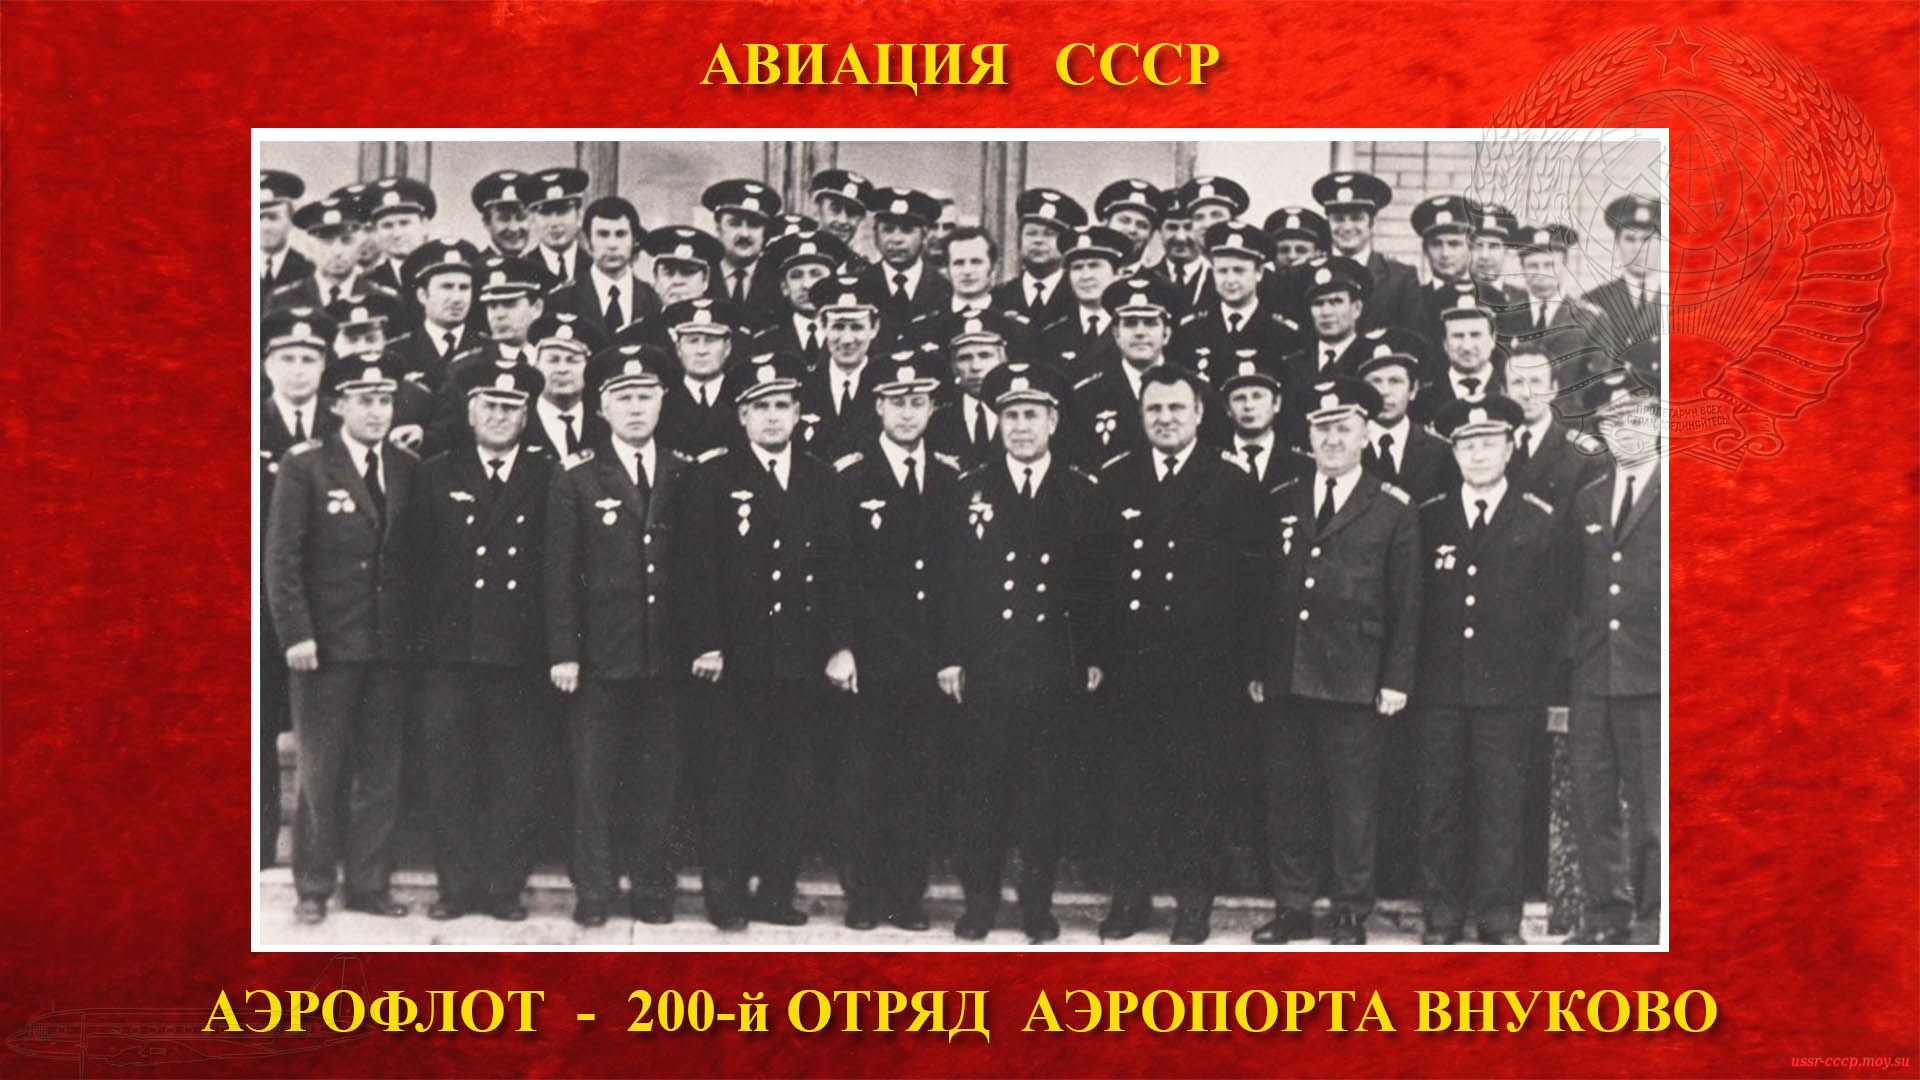 200-й отряд аэропорта Внуково (повествование)